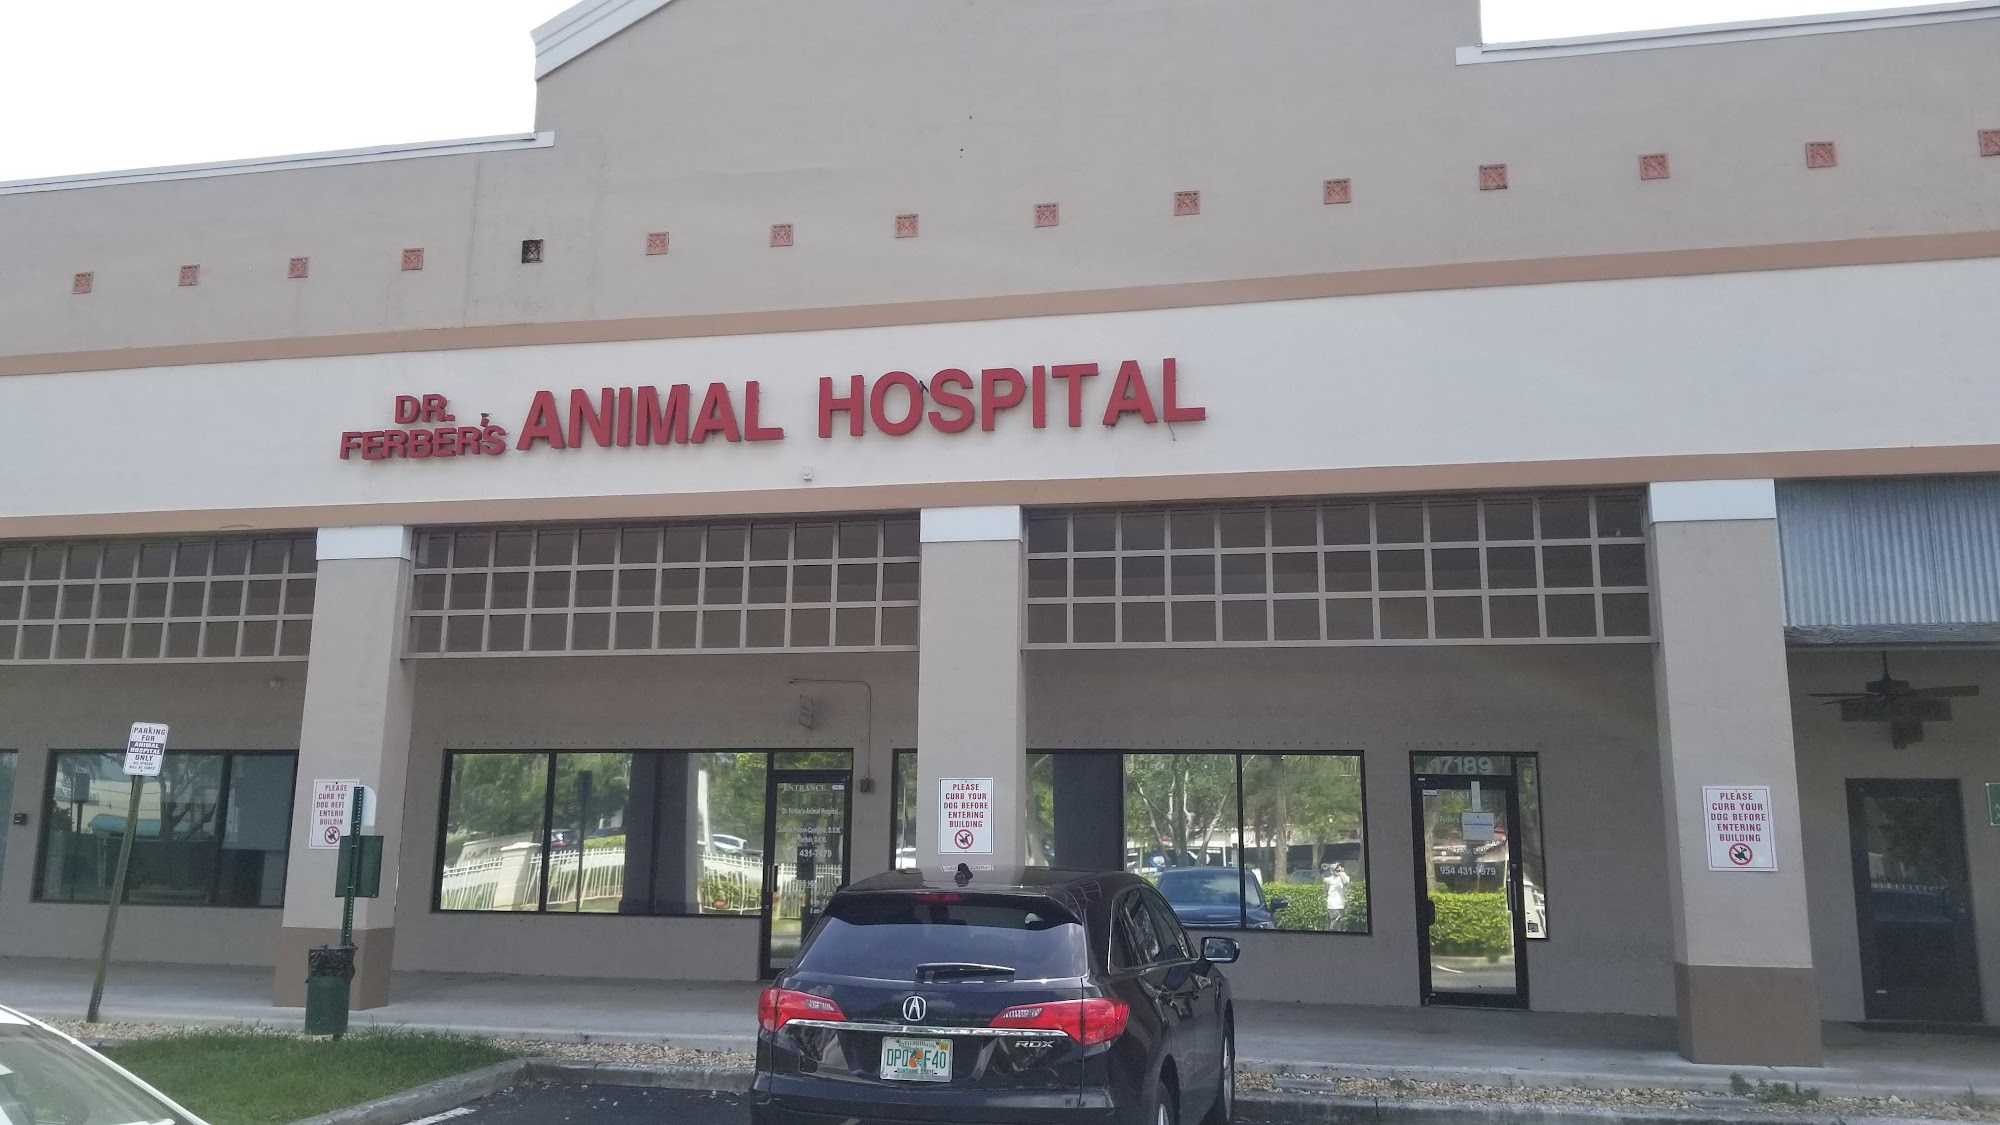 Dr. Ferber's Animal Hospital